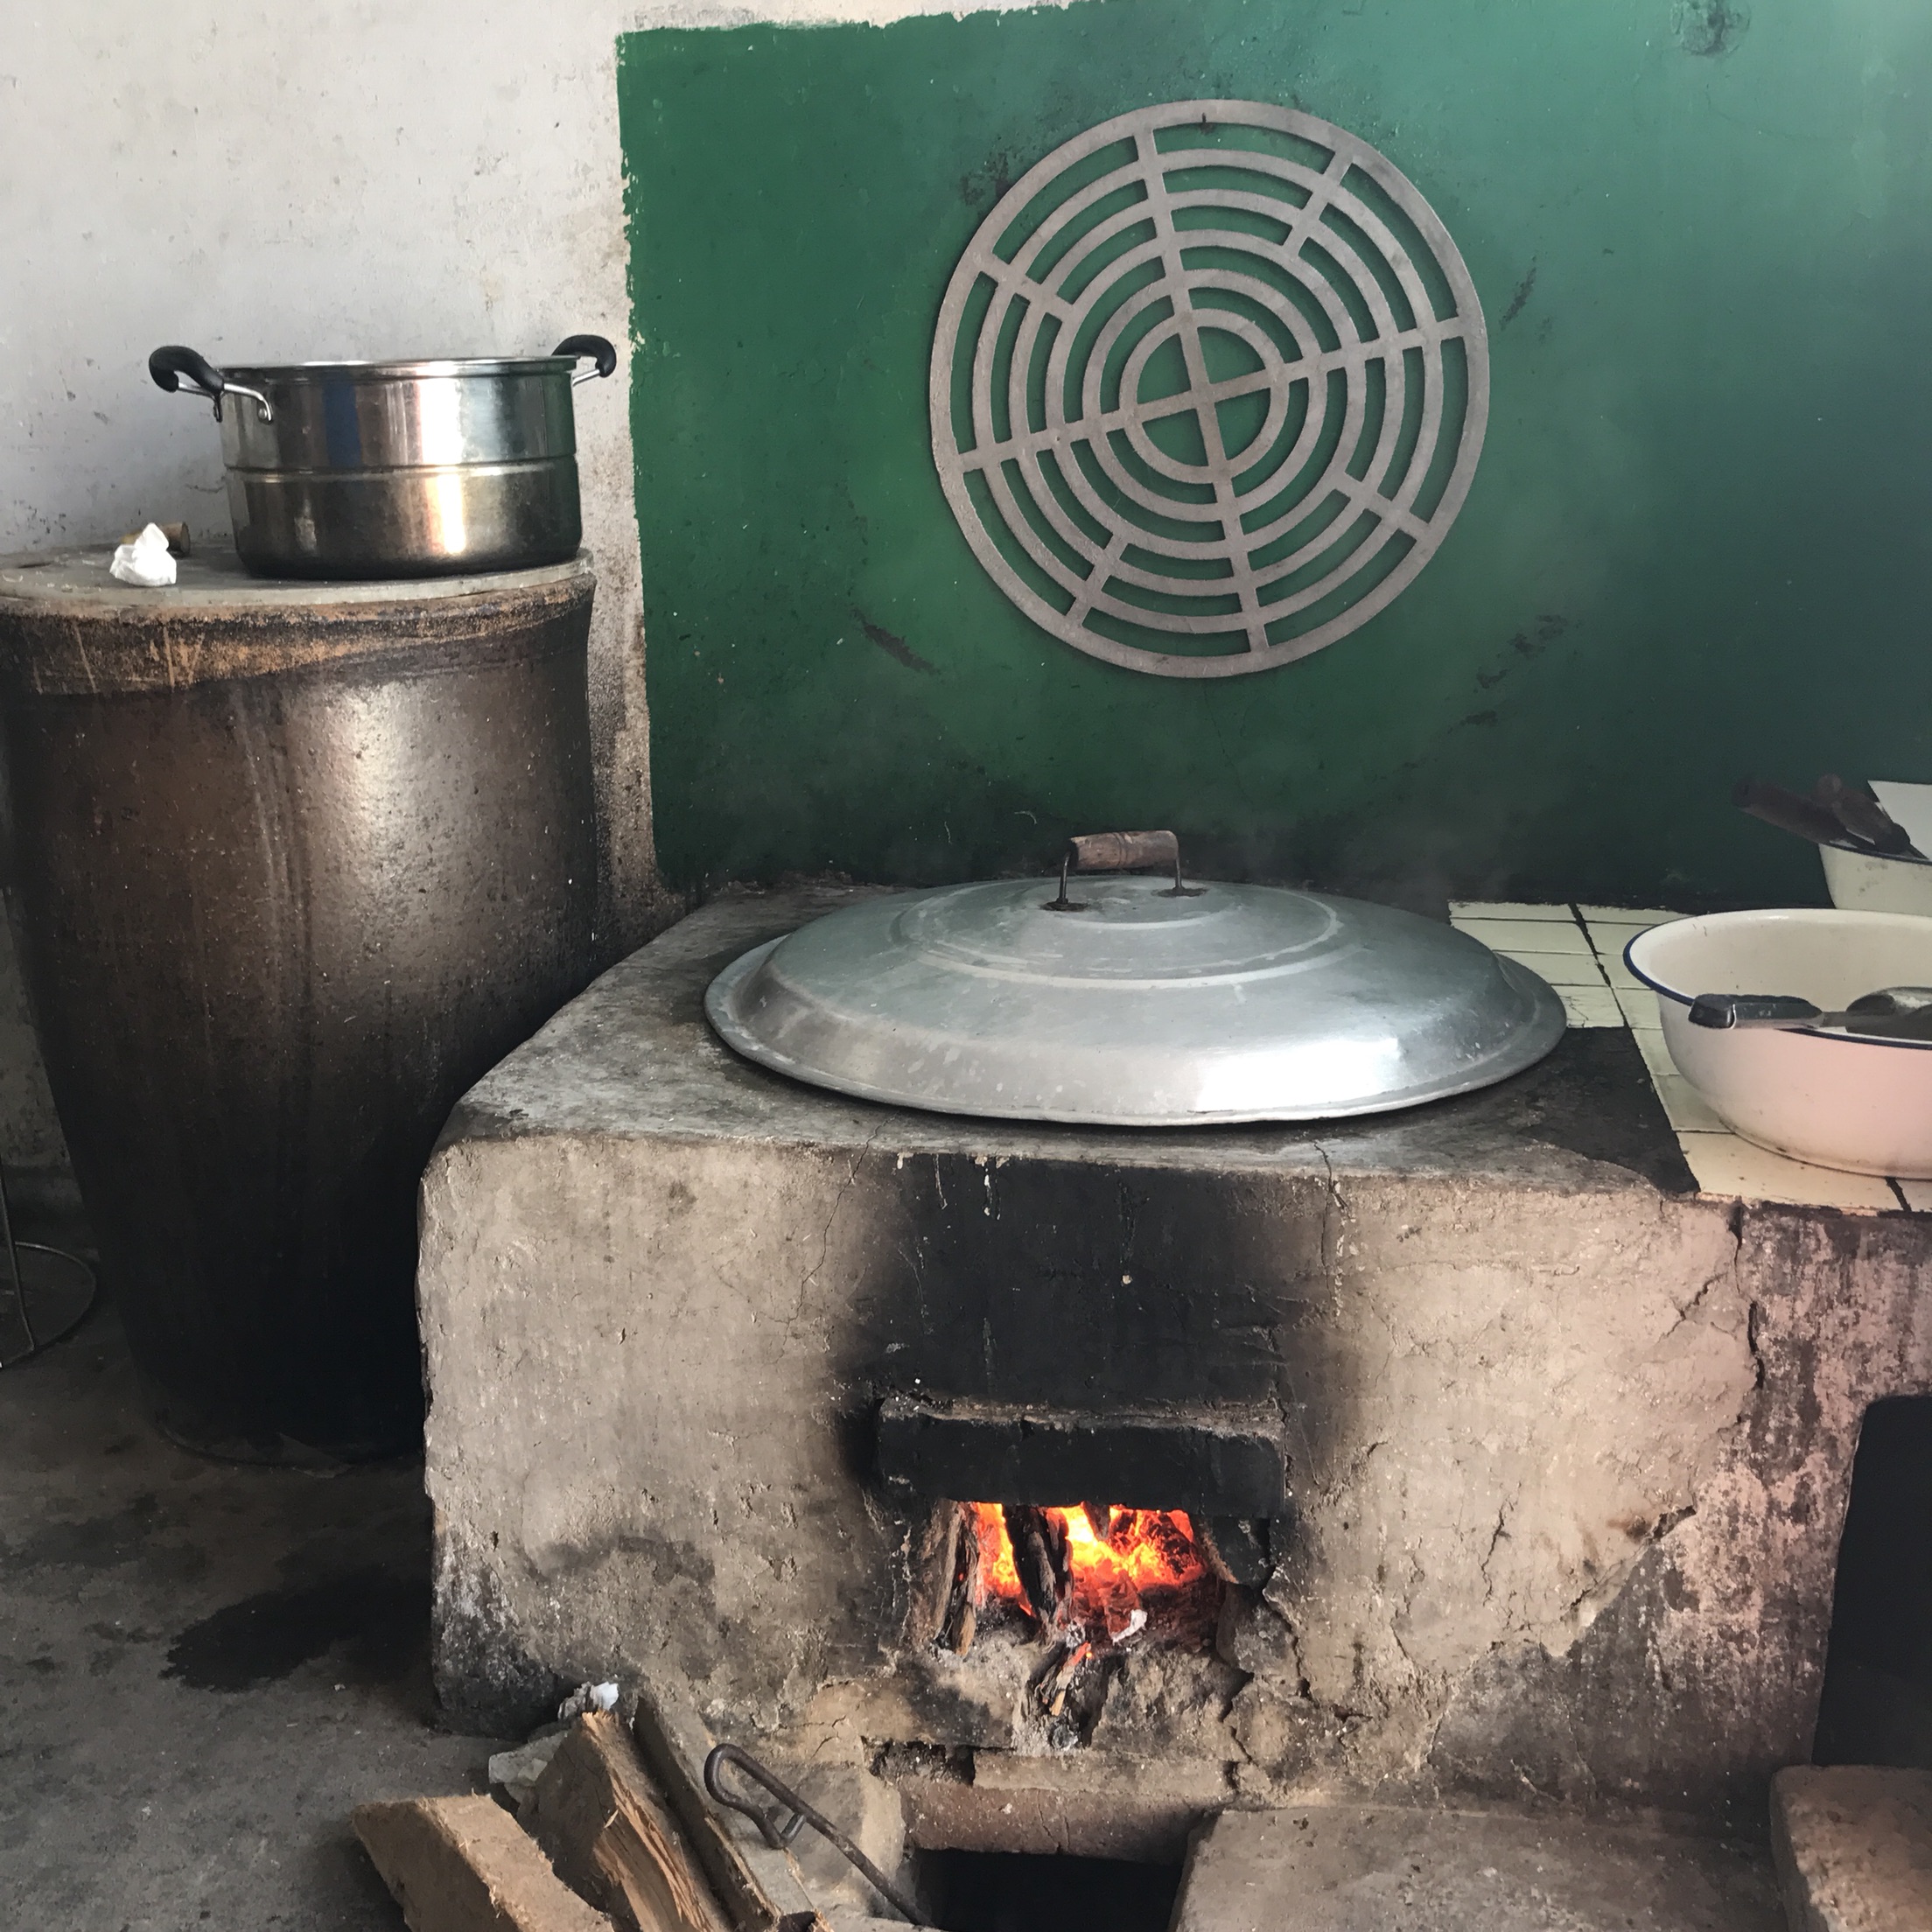 不锈钢家用移动柴火灶厨房设备农村大锅灶双锅节能实用多规格灶台-阿里巴巴